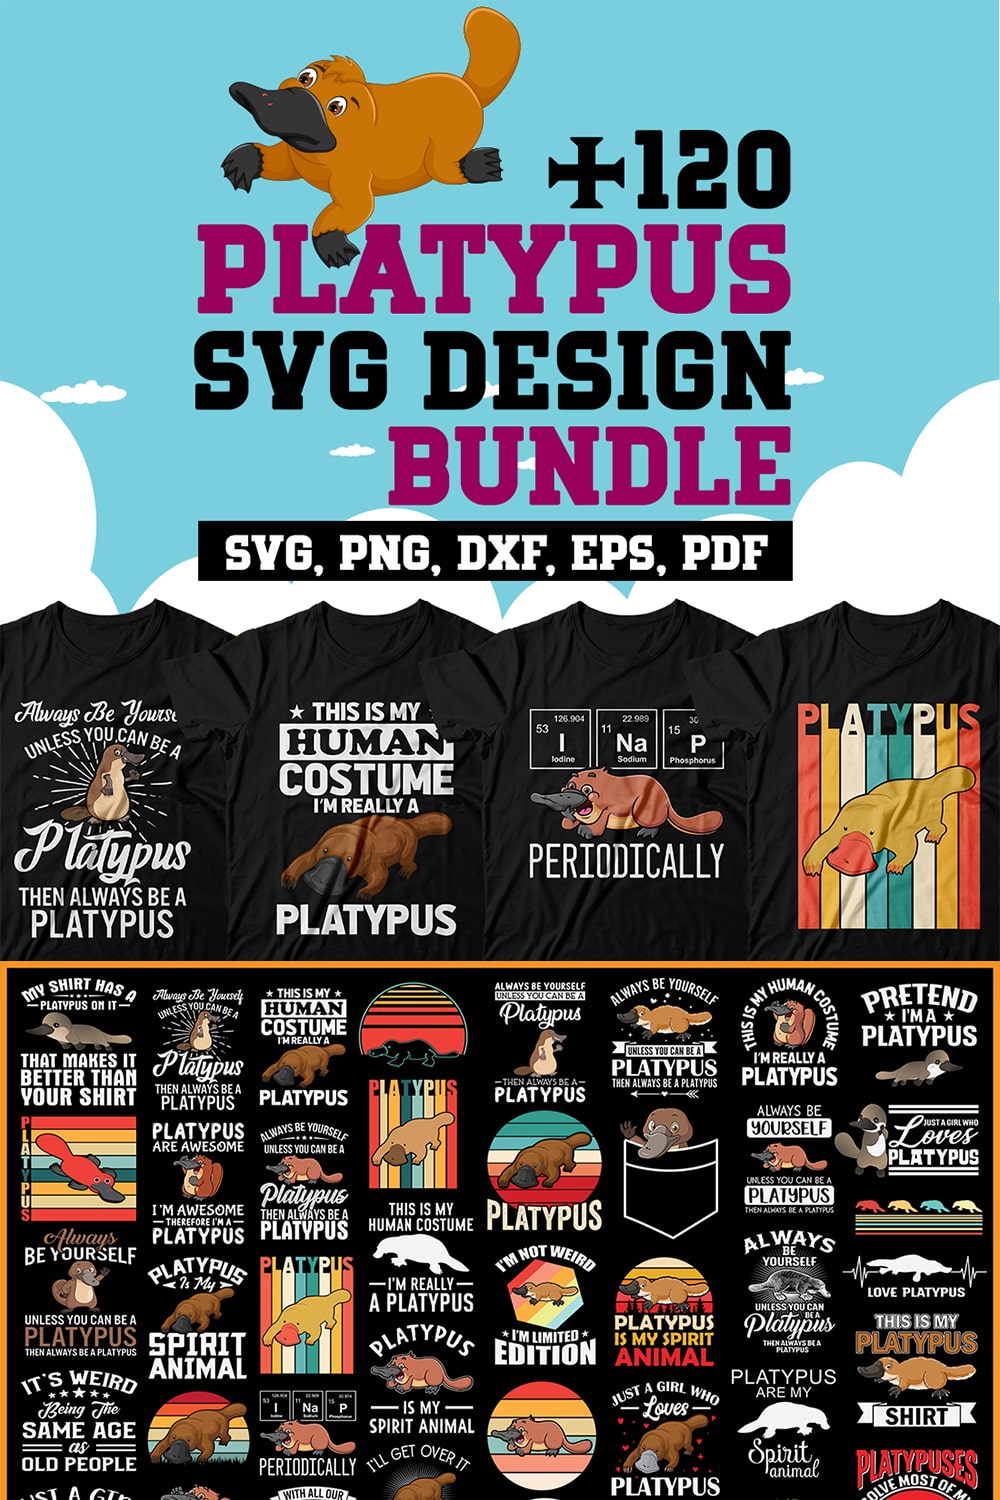 Platypus Svg Design Bundle pinterest preview image.